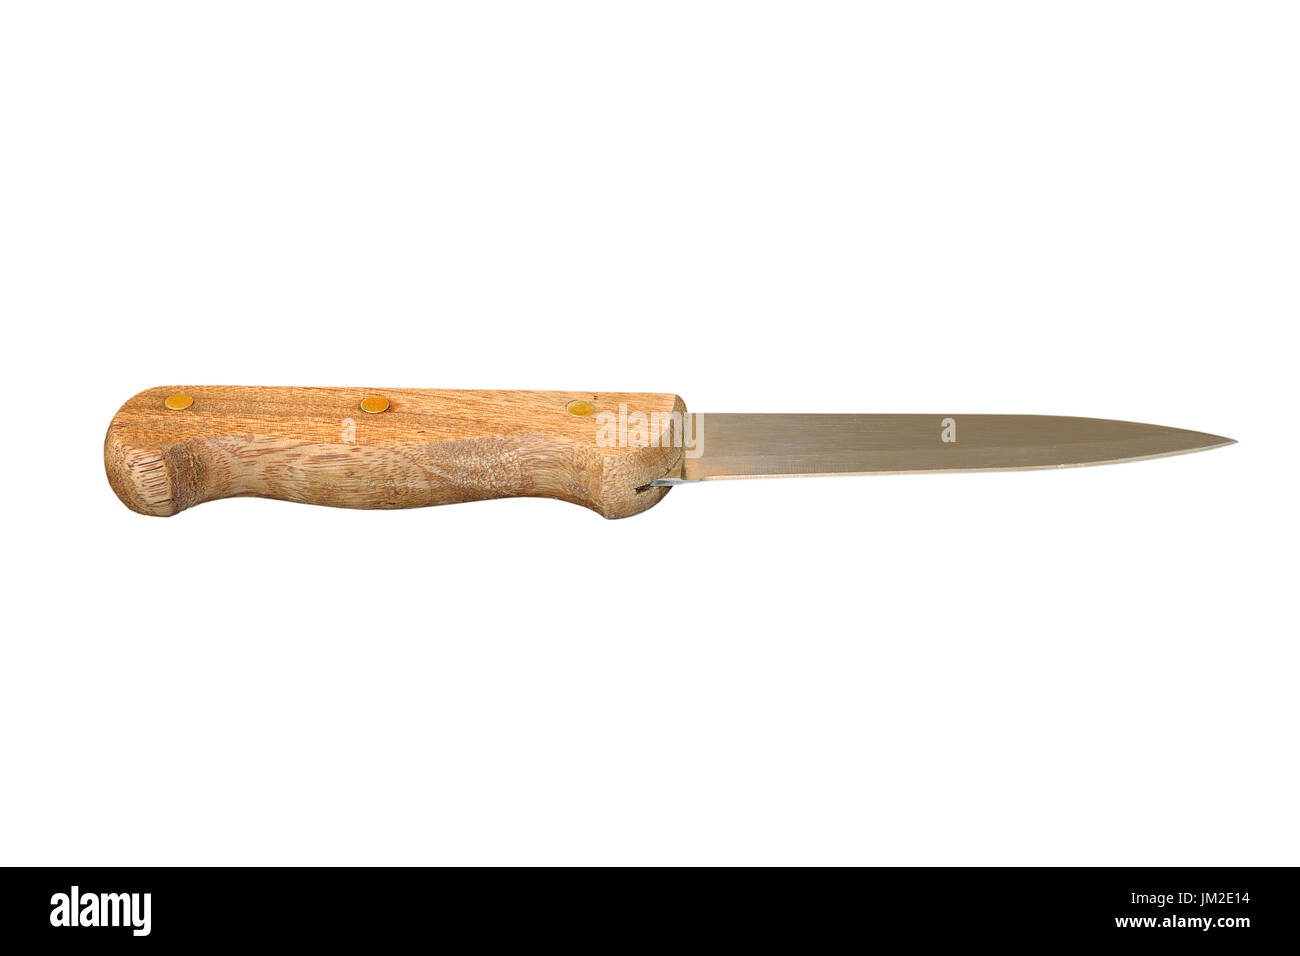 Cuchillo de cocina antigua aislado sobre fondo blanco. Foto de stock